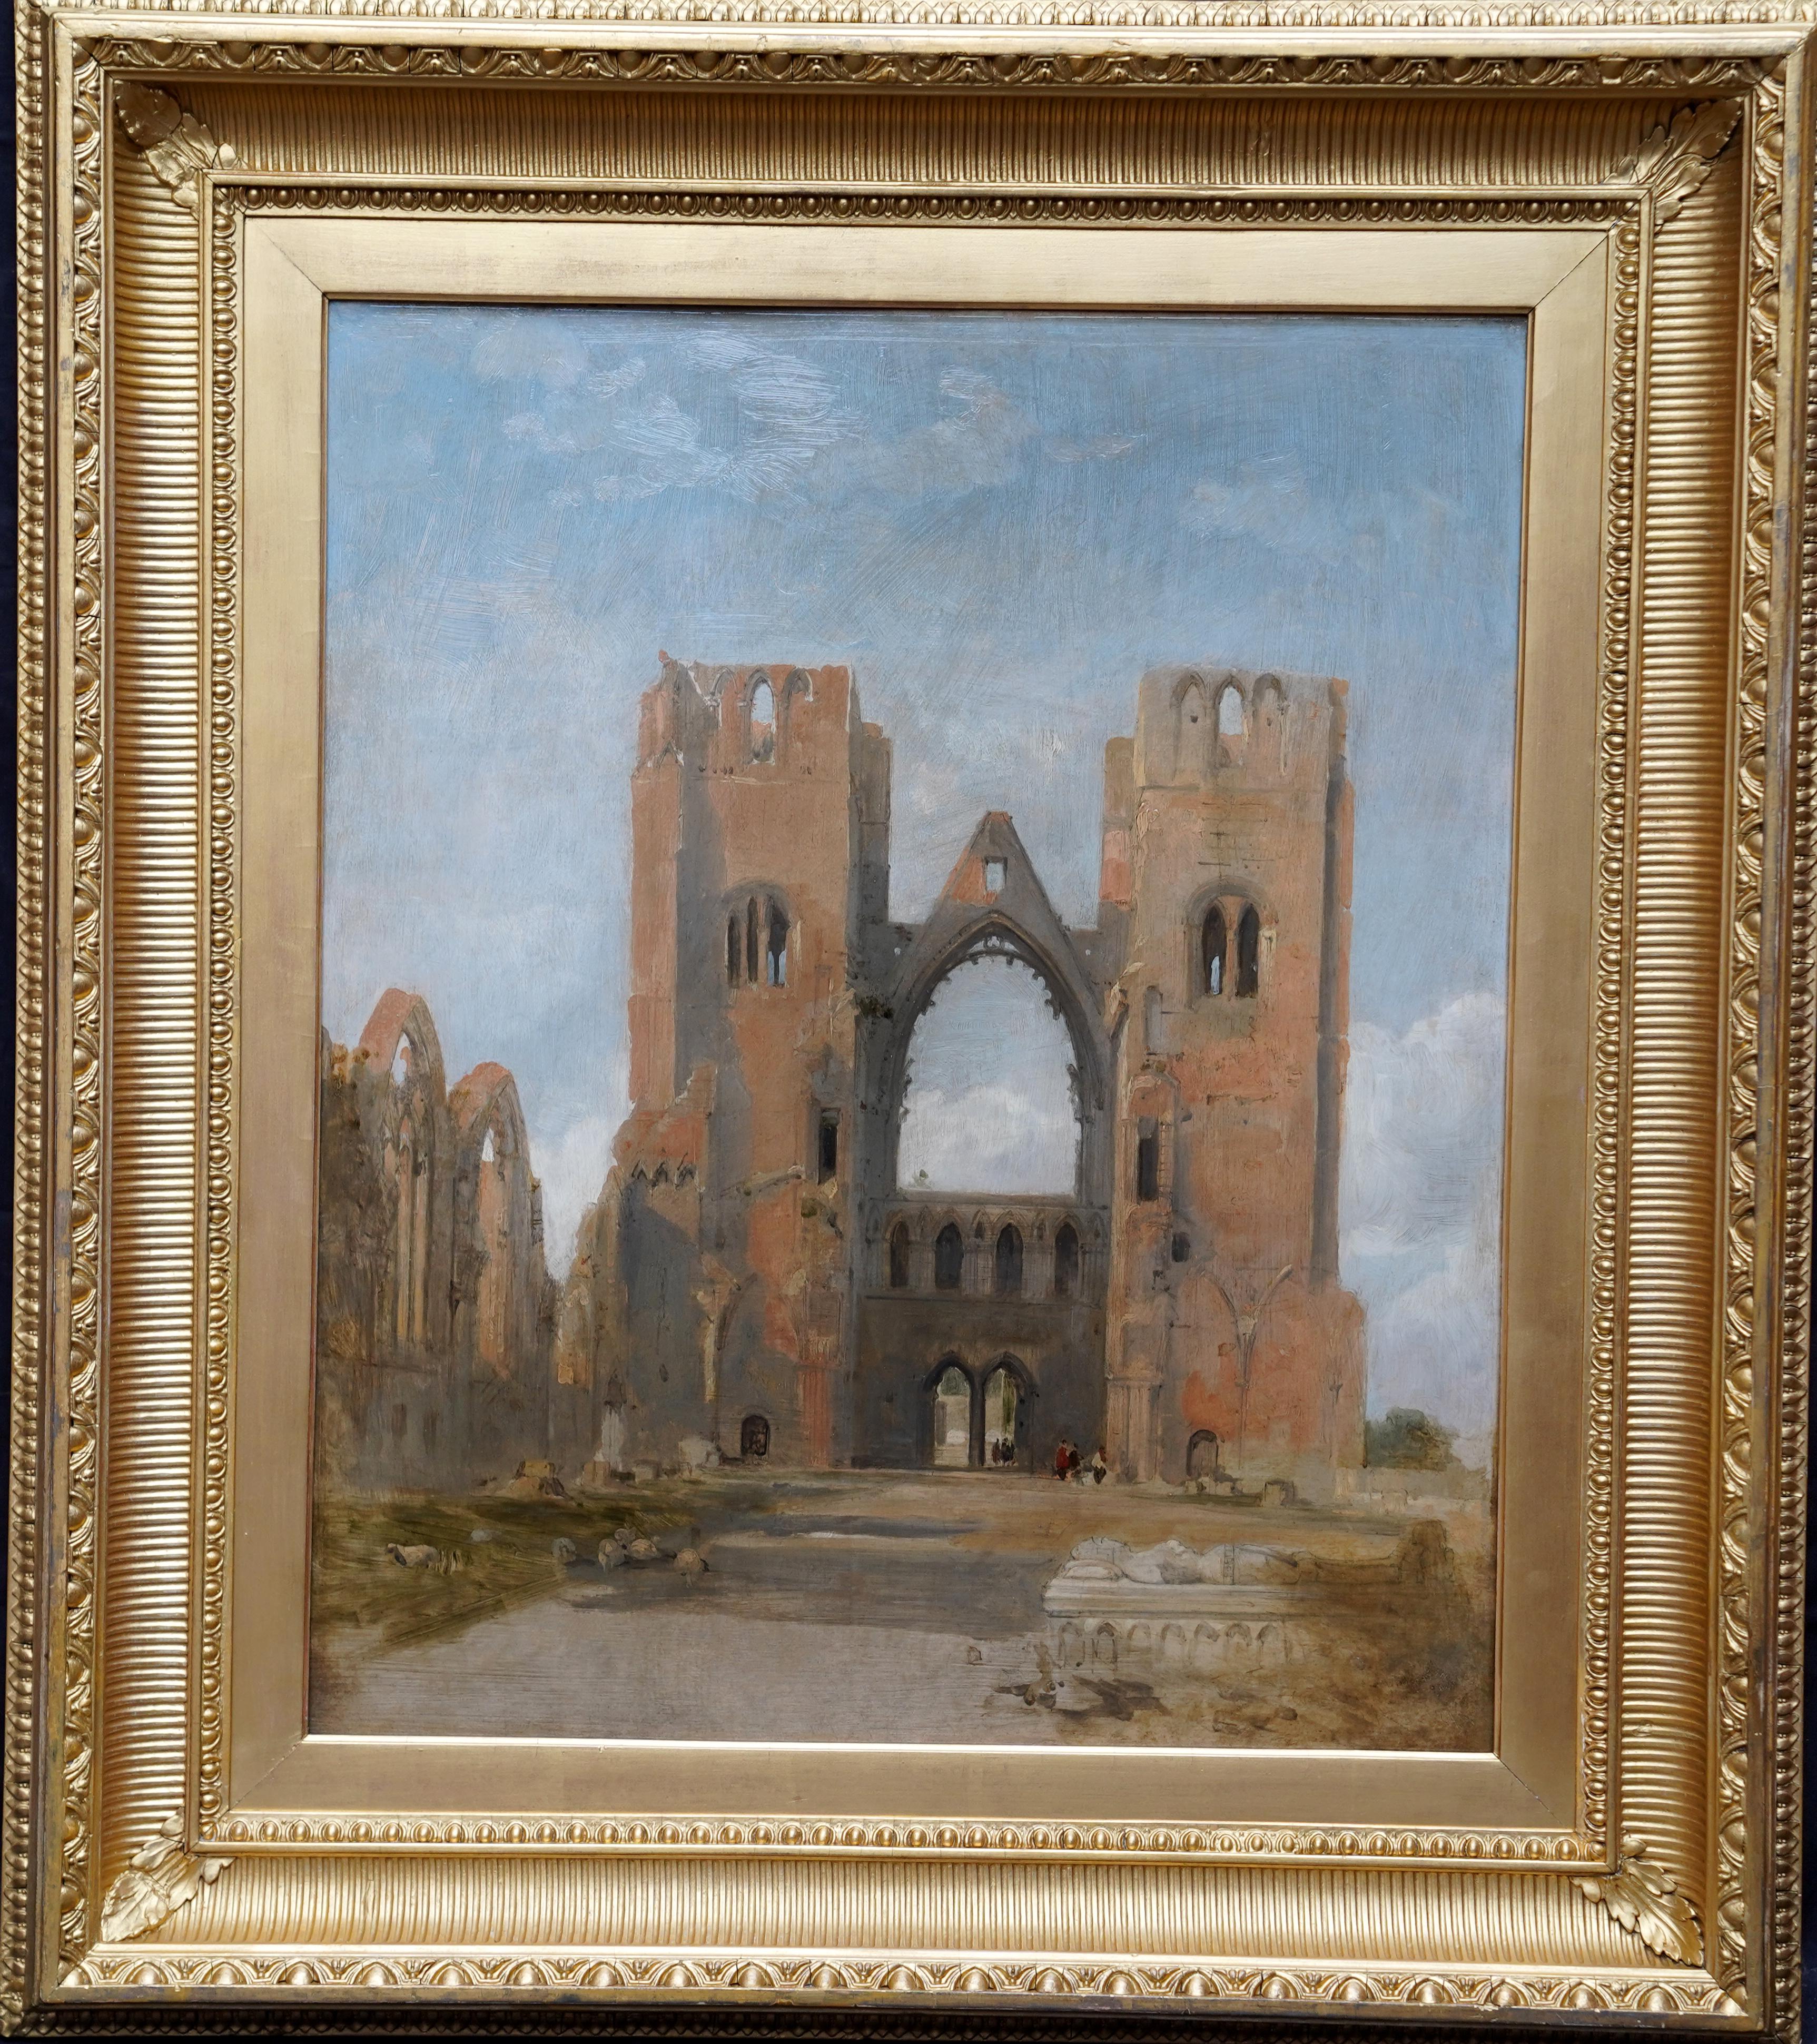 Landscape Painting David Roberts - Rues de cathédrales d'Elgin - Peinture à l'huile d'un paysage architectural écossais du 19e siècle